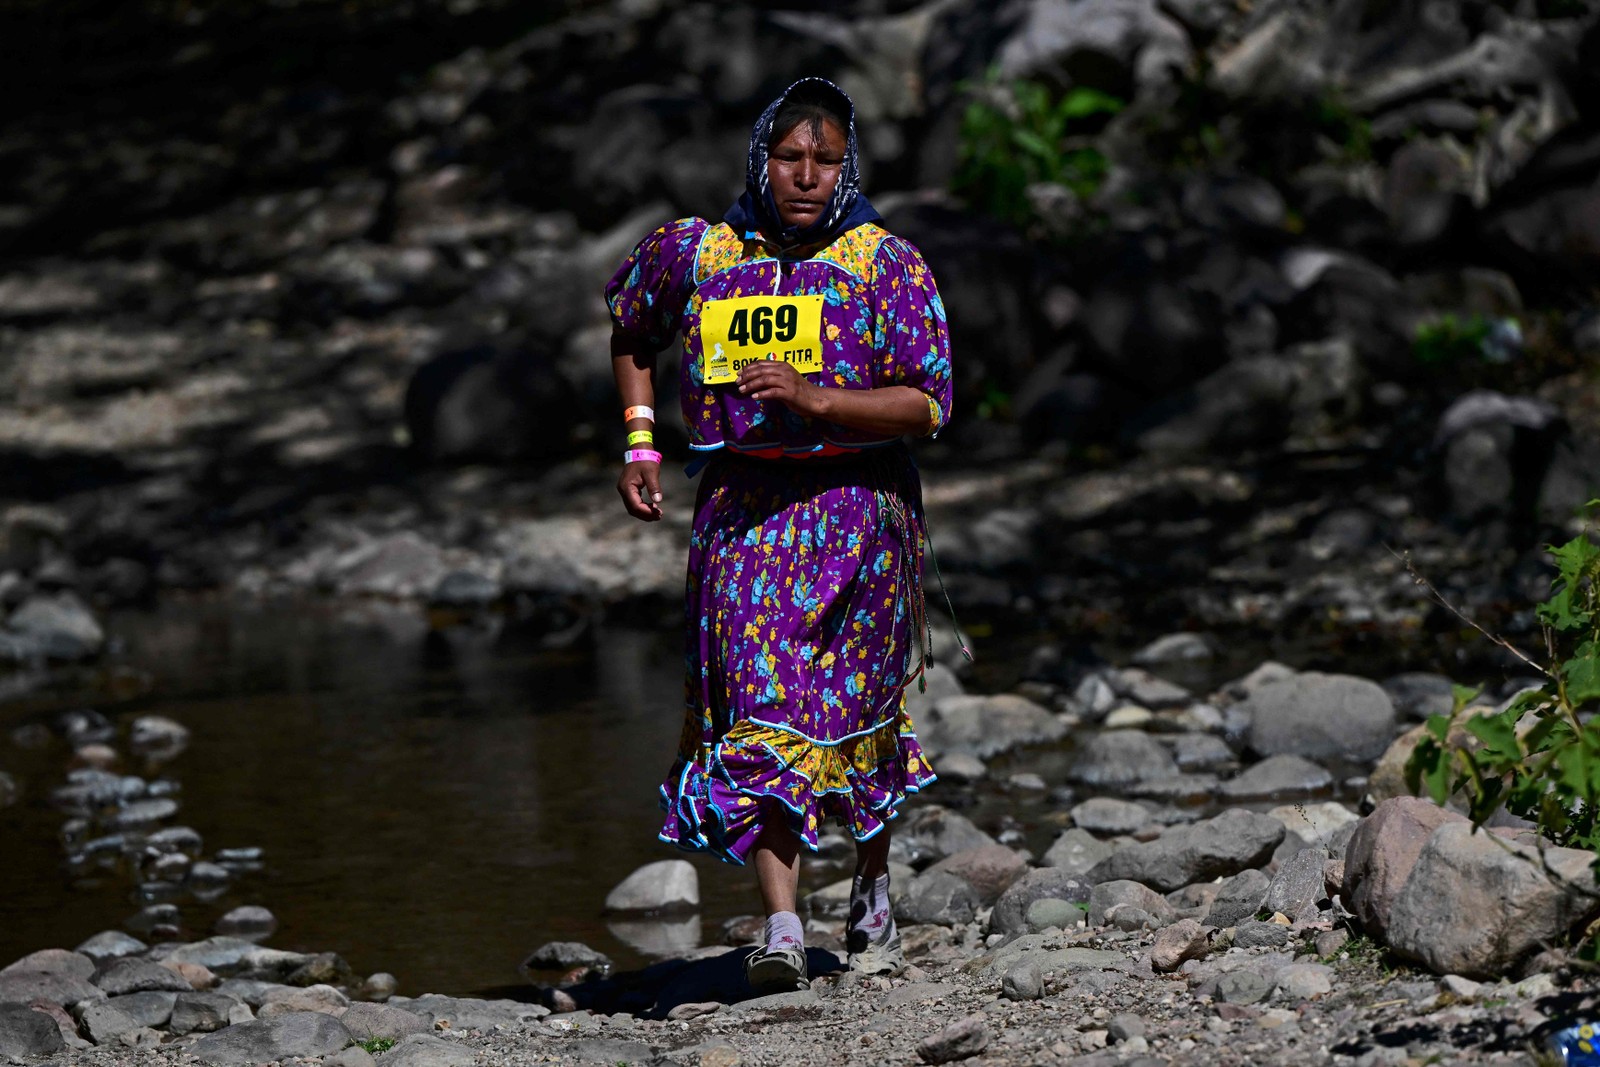 Mulher Tarahumara, povo originário do México, compete em ultramaratona Cavalo Branco, na região de montanhas no noroeste do país — Foto: PEDRO PARDO/AFP